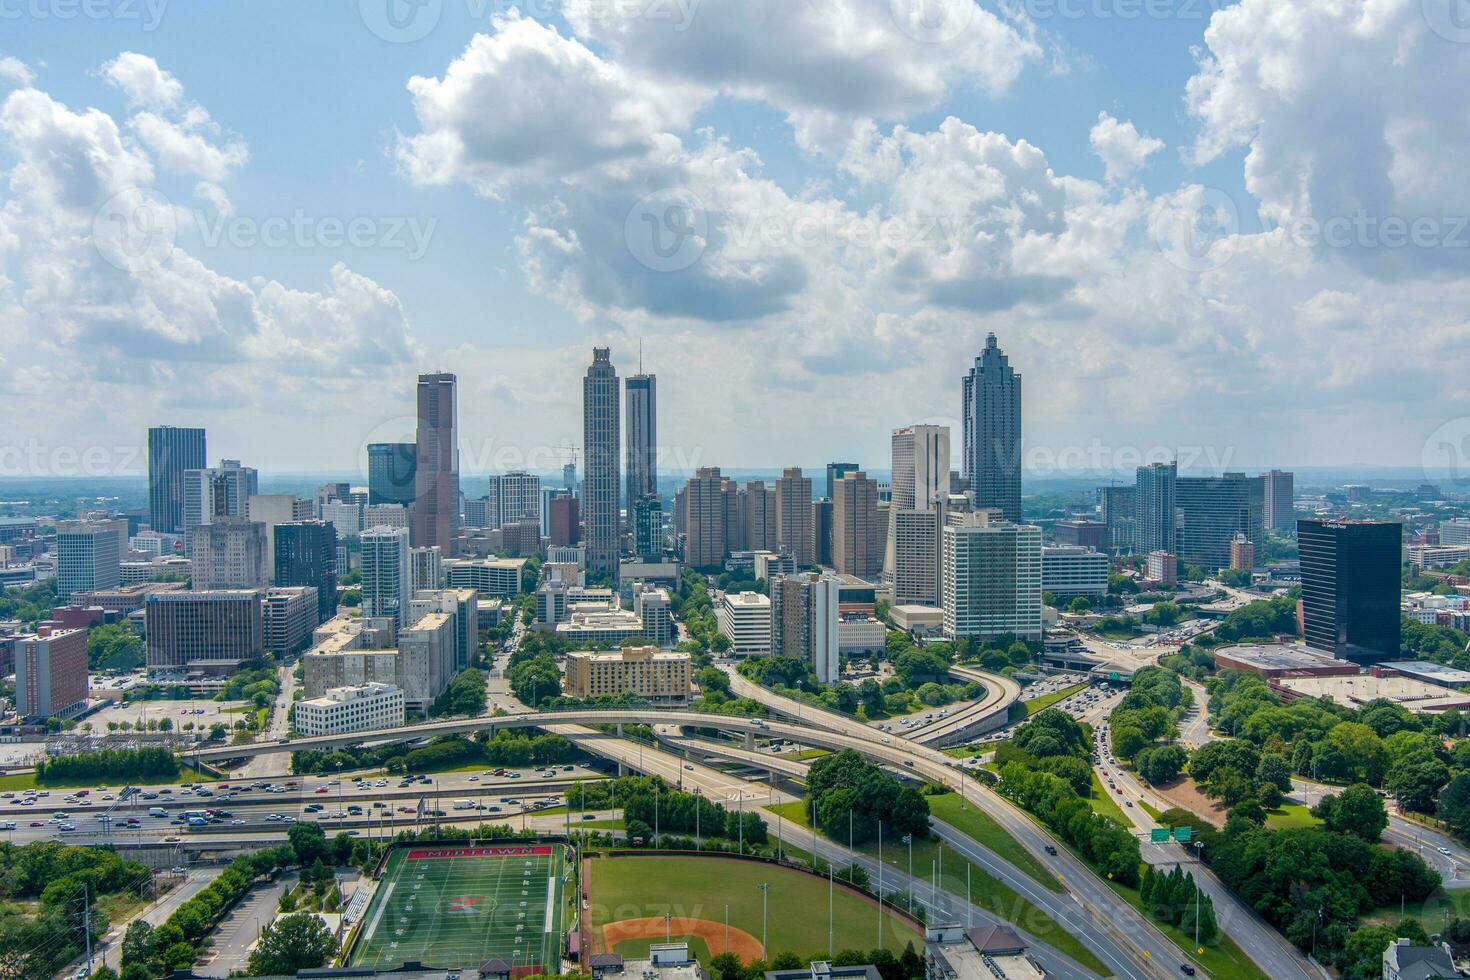 The downtown Atlanta, Georgia skyline photo